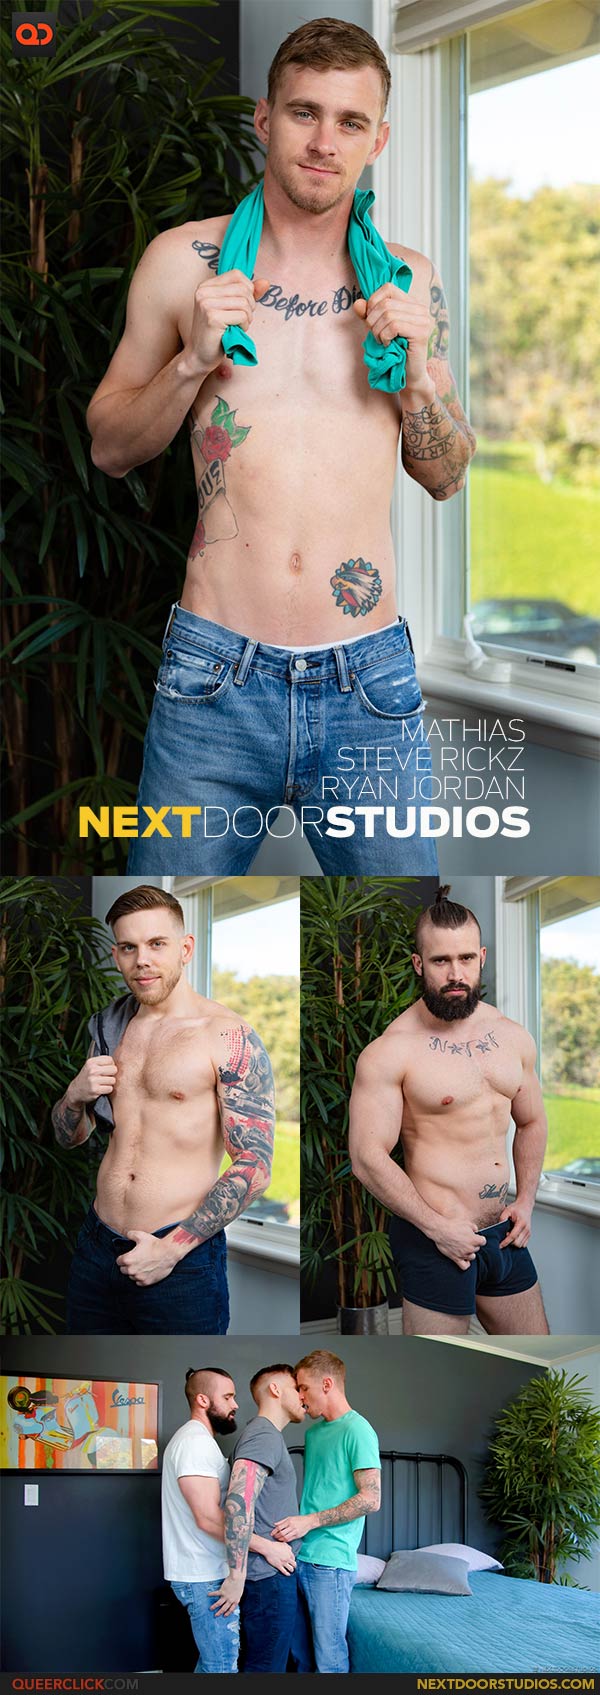 Next Door Studios:  Ryan Jordan, Mathias and Steve Rickz